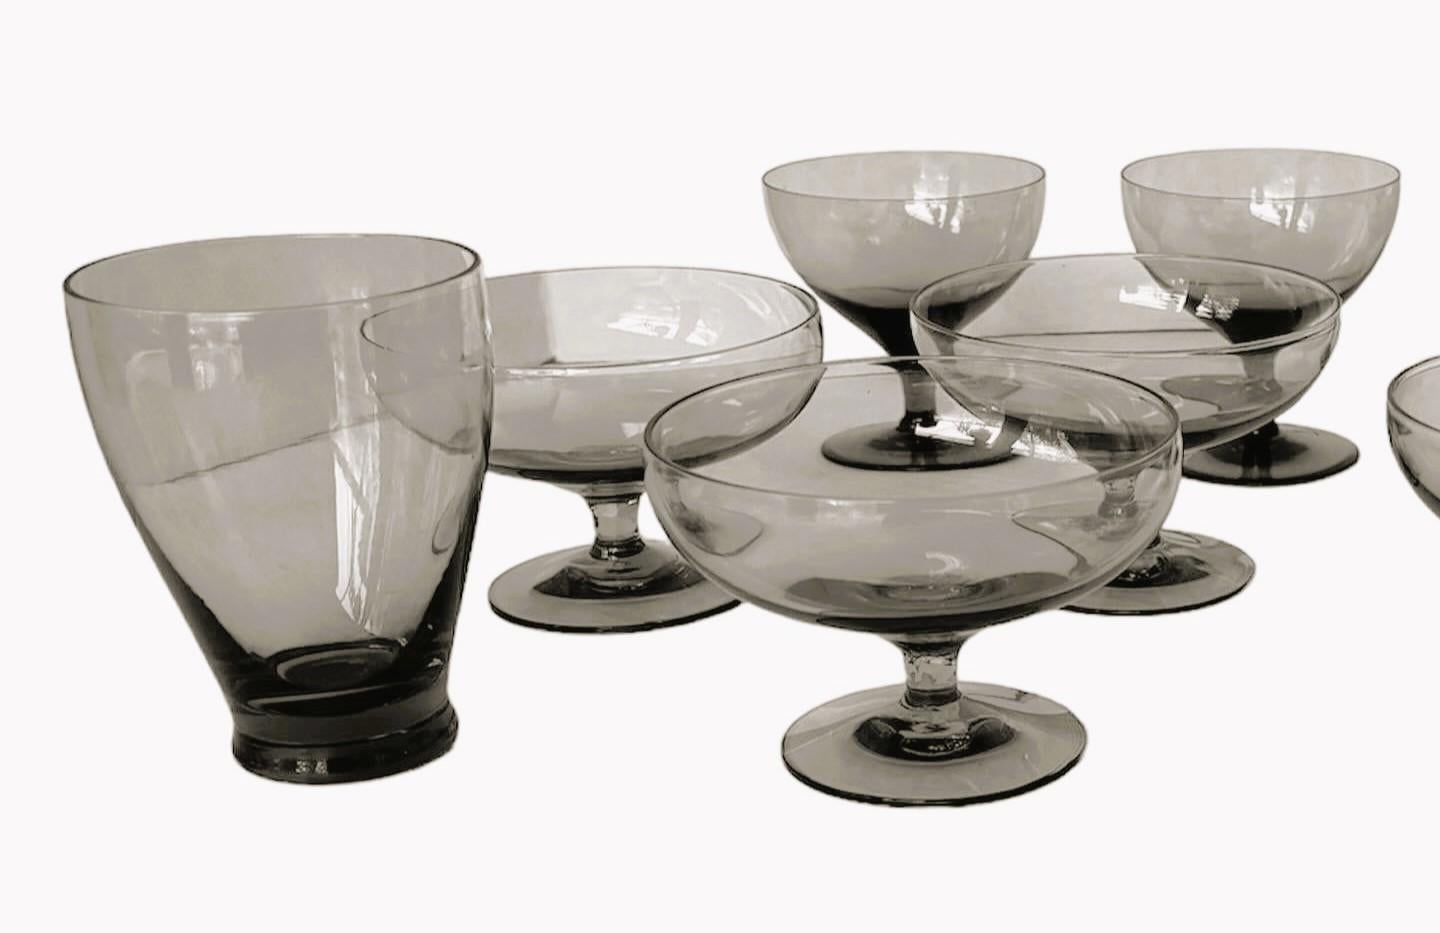 Groupement de 12 verres modernes américains du milieu du siècle, conçus par Russel Wright et fabriqués par Morgantown. Comprenant 12 verres en granit gris - 2 verres à jus, 6 verres à dessert/champagne et 4 gobelets à vin, tous en très bon état.